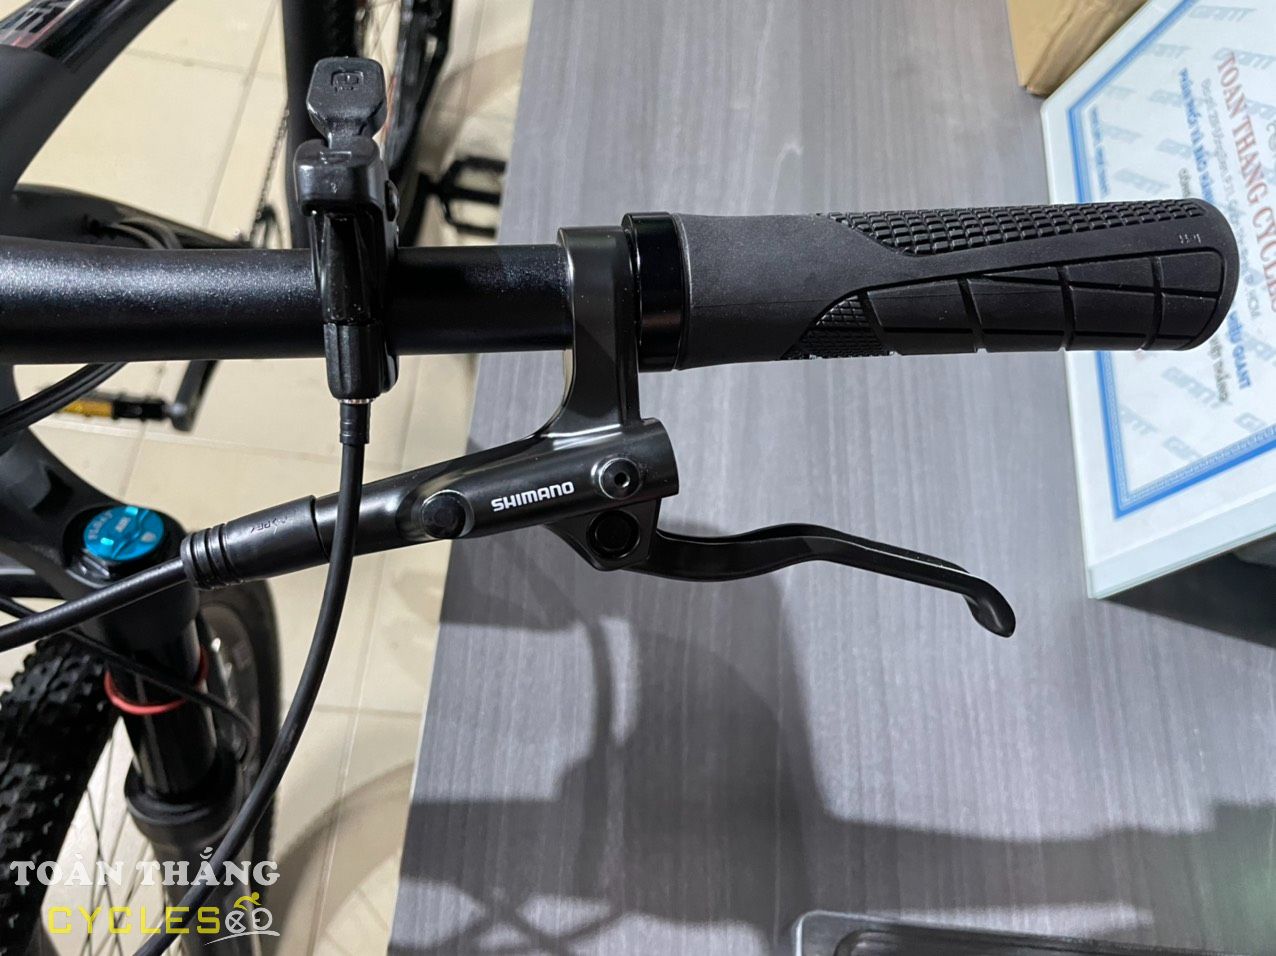 Xe đạp địa hình TrinX X9 Elite 27.5 2022 Đen Bạc